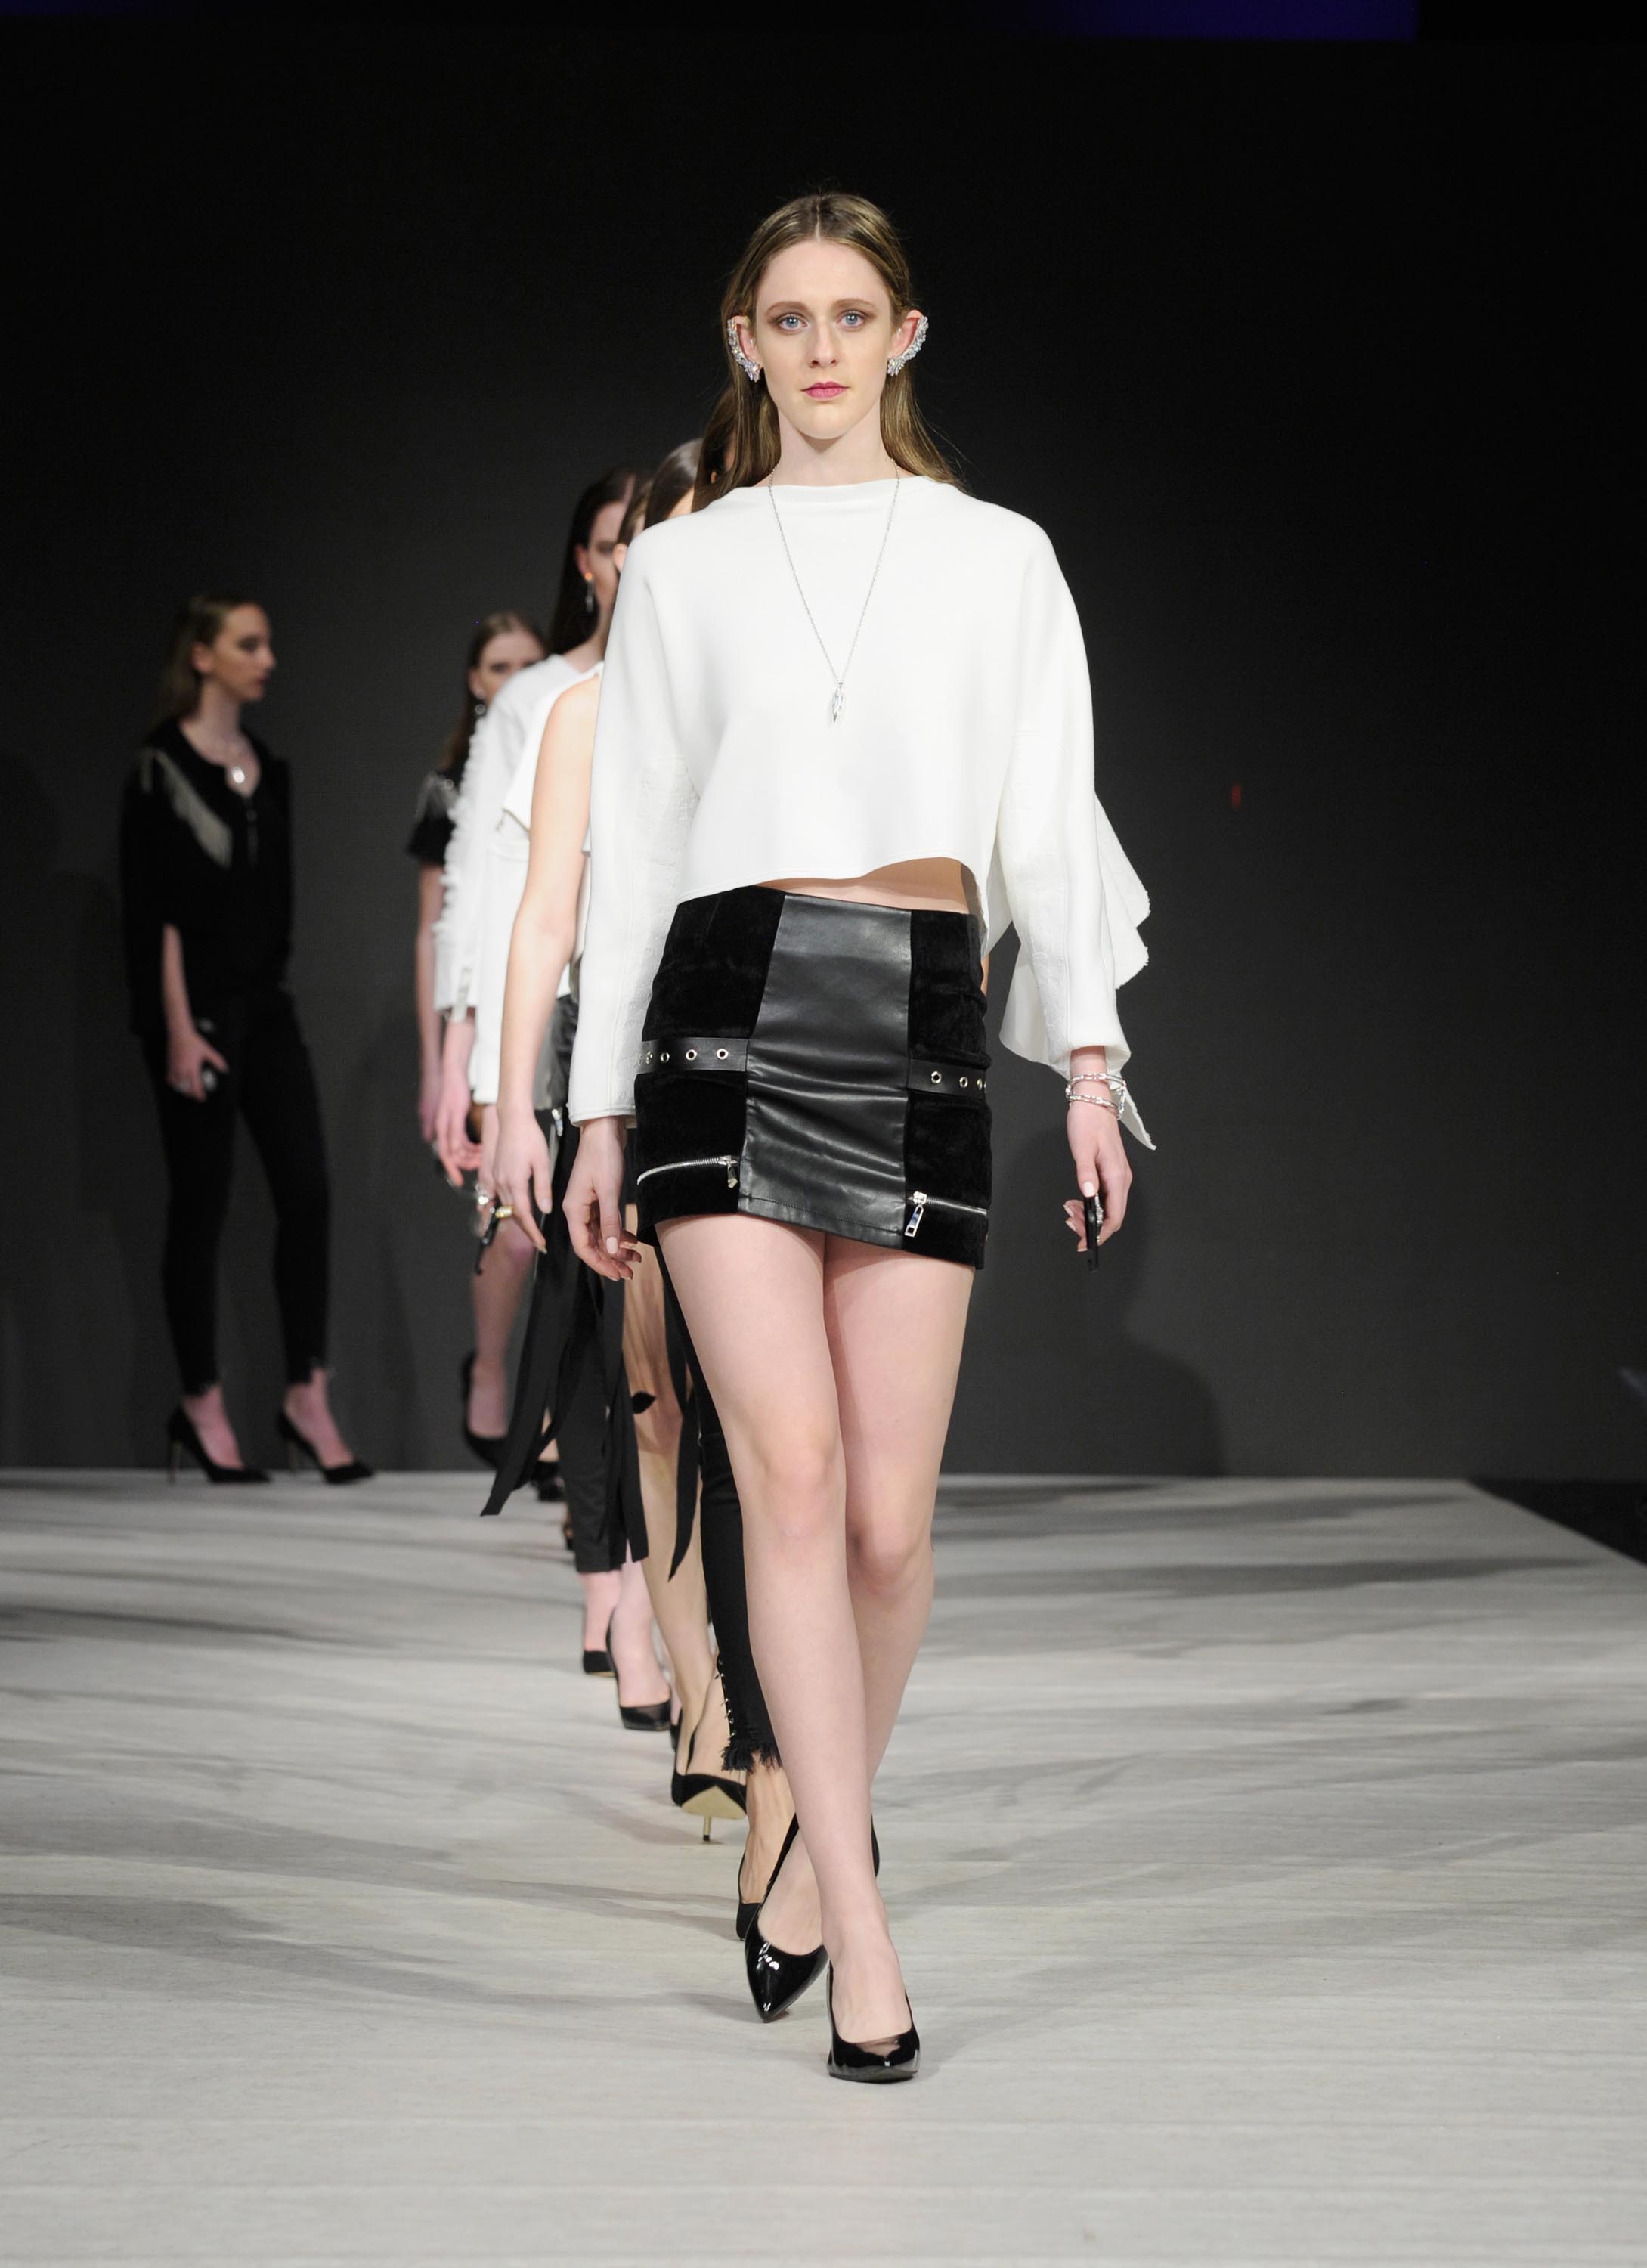 Models walk the runway at Vancouver Fashion Week